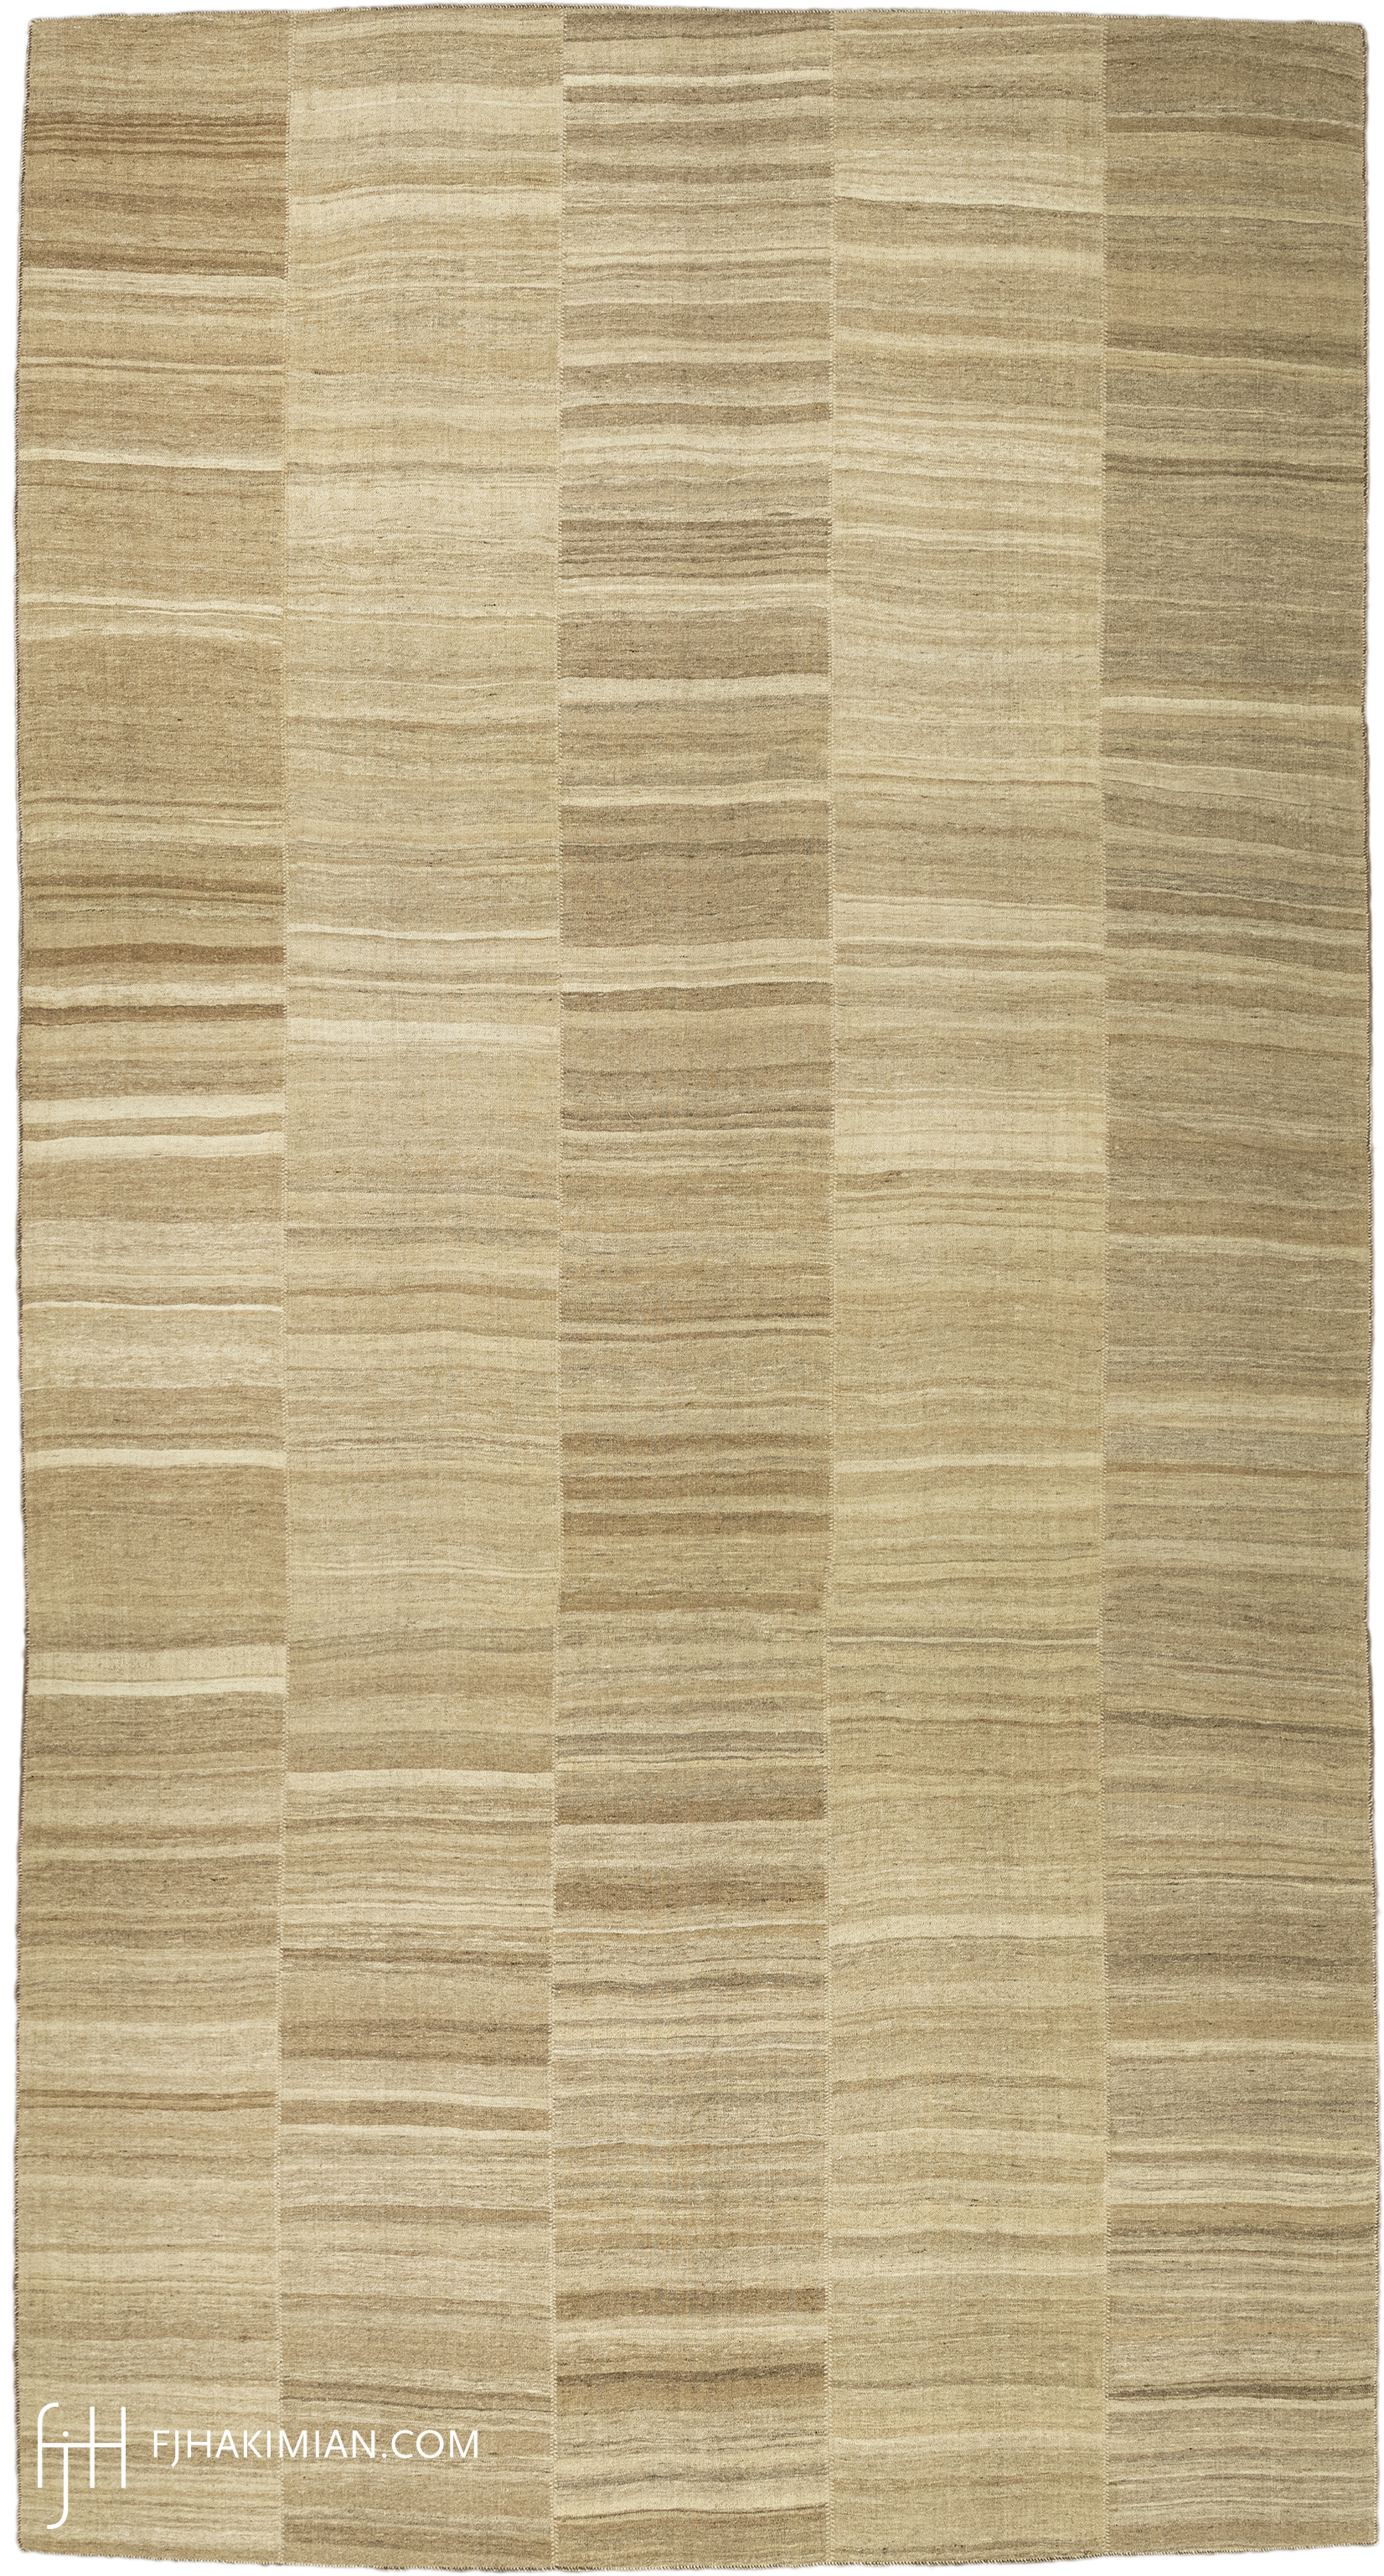 FJ Hakimian | 24082 | Vintage Carpet